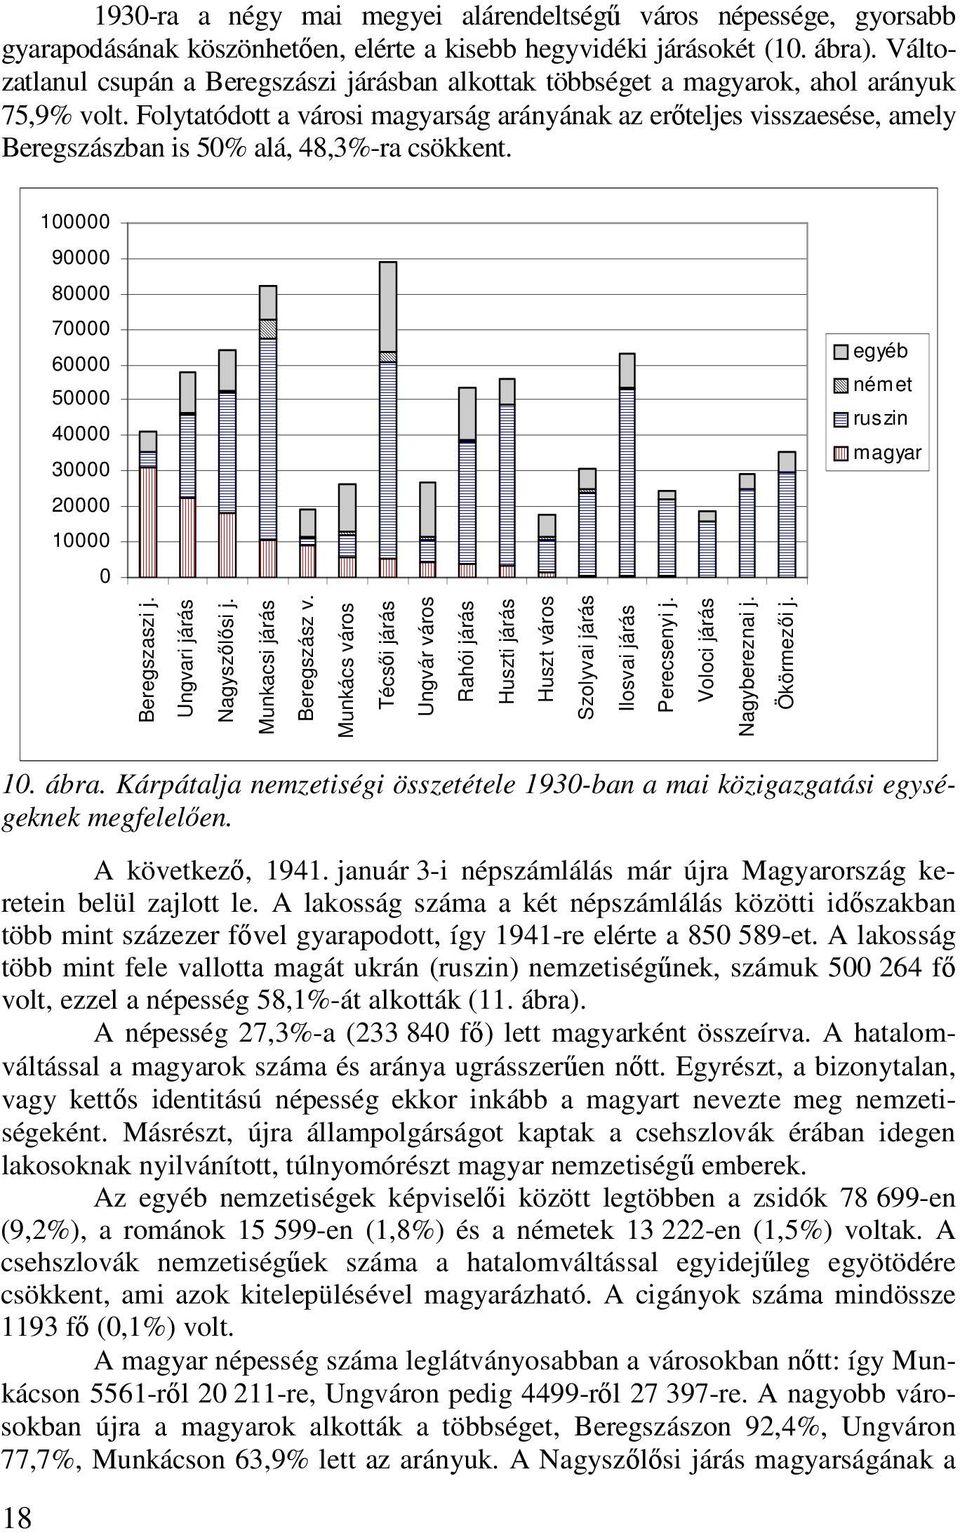 Folytatódott a városi magyarság arányának az erıteljes visszaesése, amely Beregszászban is 50% alá, 48,3%-ra csökkent.